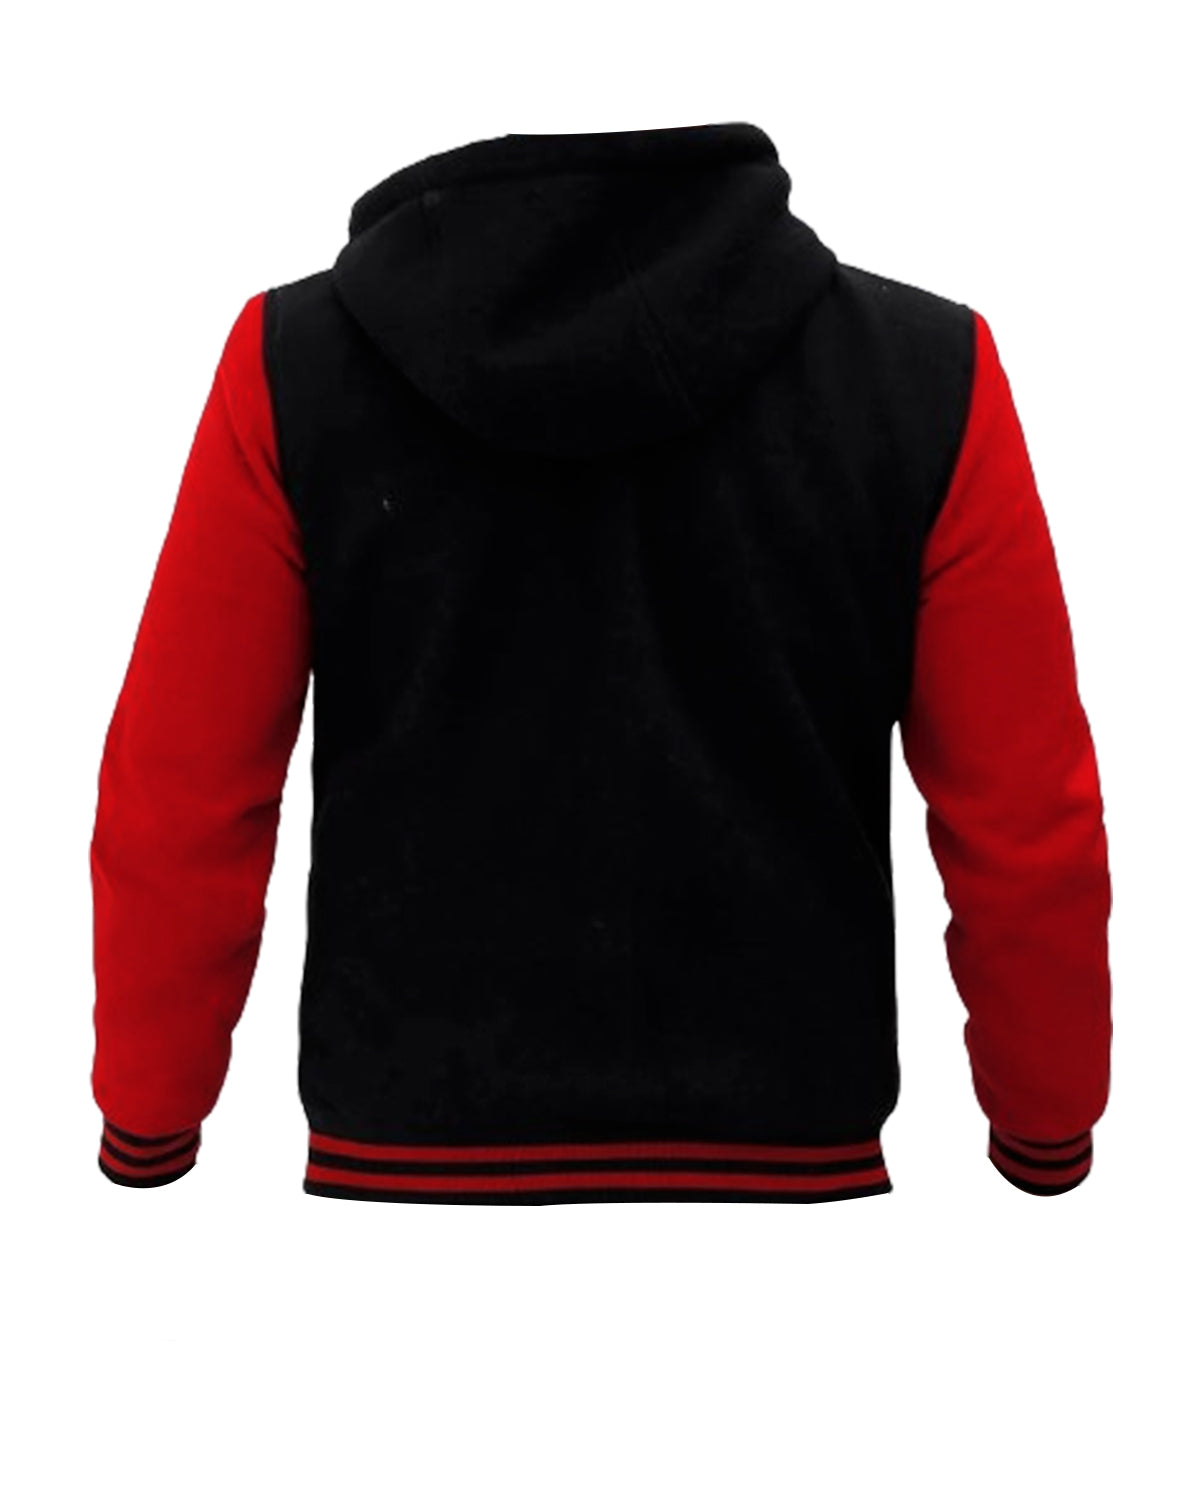 Mens Red and Black Wool Varsity Hoodie Jacket